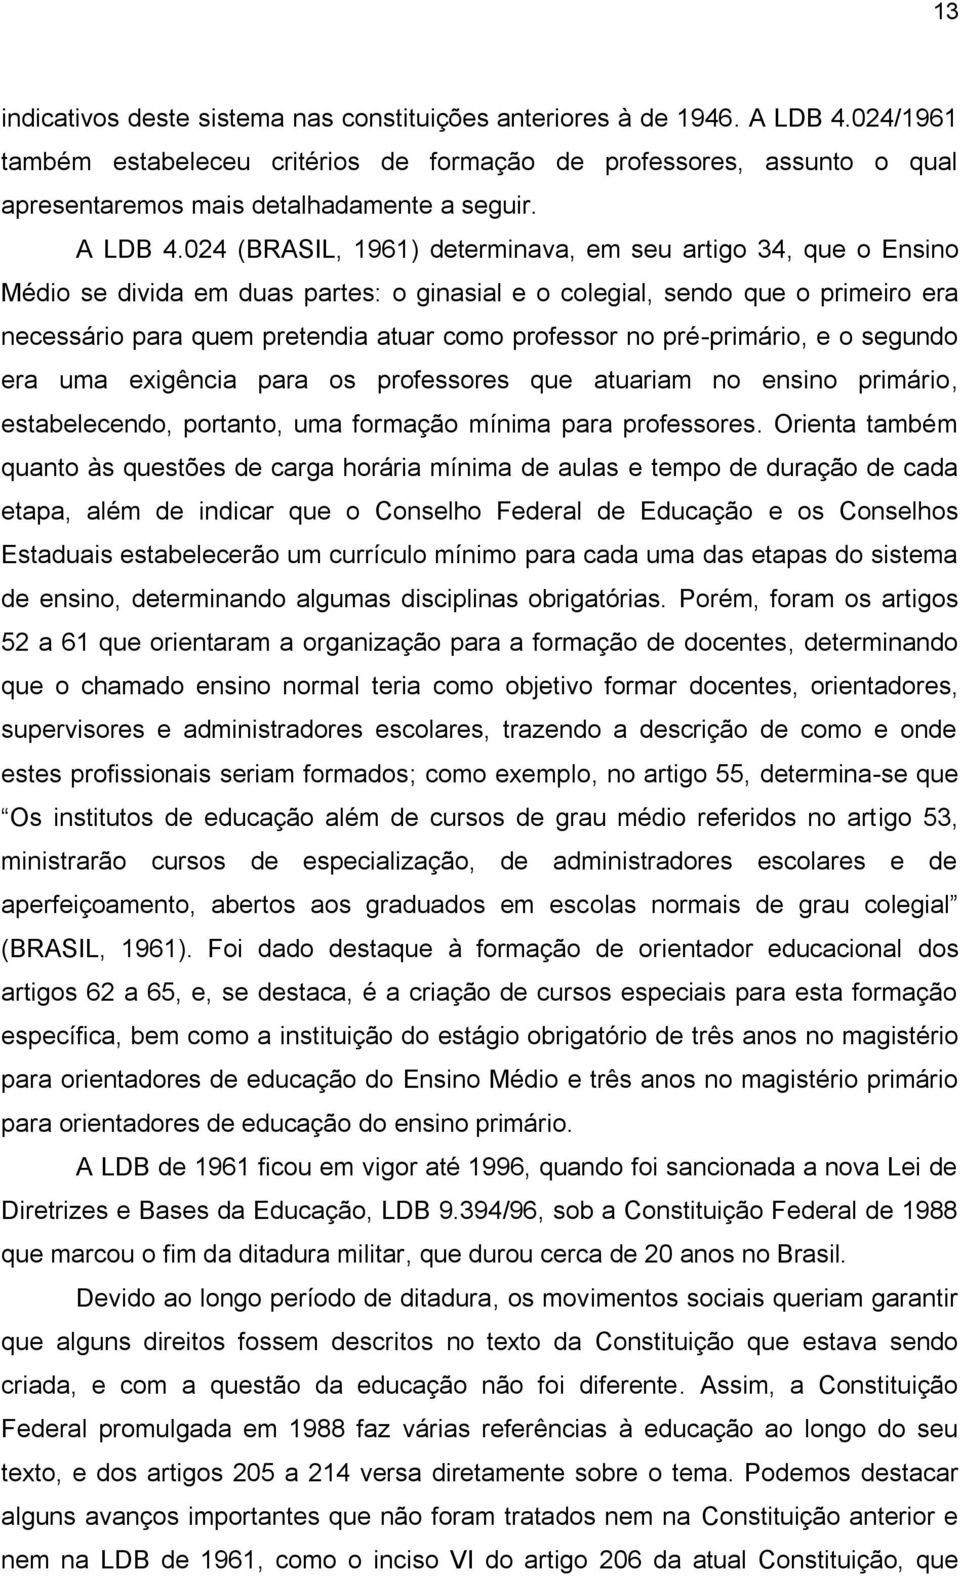 024 (BRASIL, 1961) determinava, em seu artigo 34, que o Ensino Médio se divida em duas partes: o ginasial e o colegial, sendo que o primeiro era necessário para quem pretendia atuar como professor no